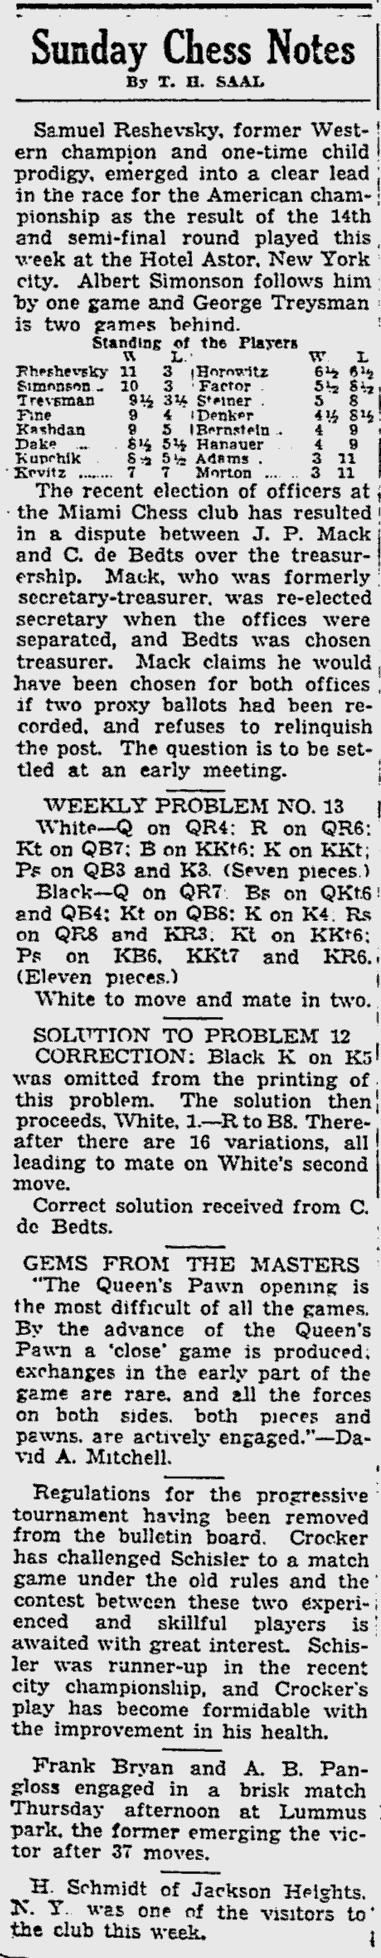 1936.05.17-01 Miami Daily News.jpg